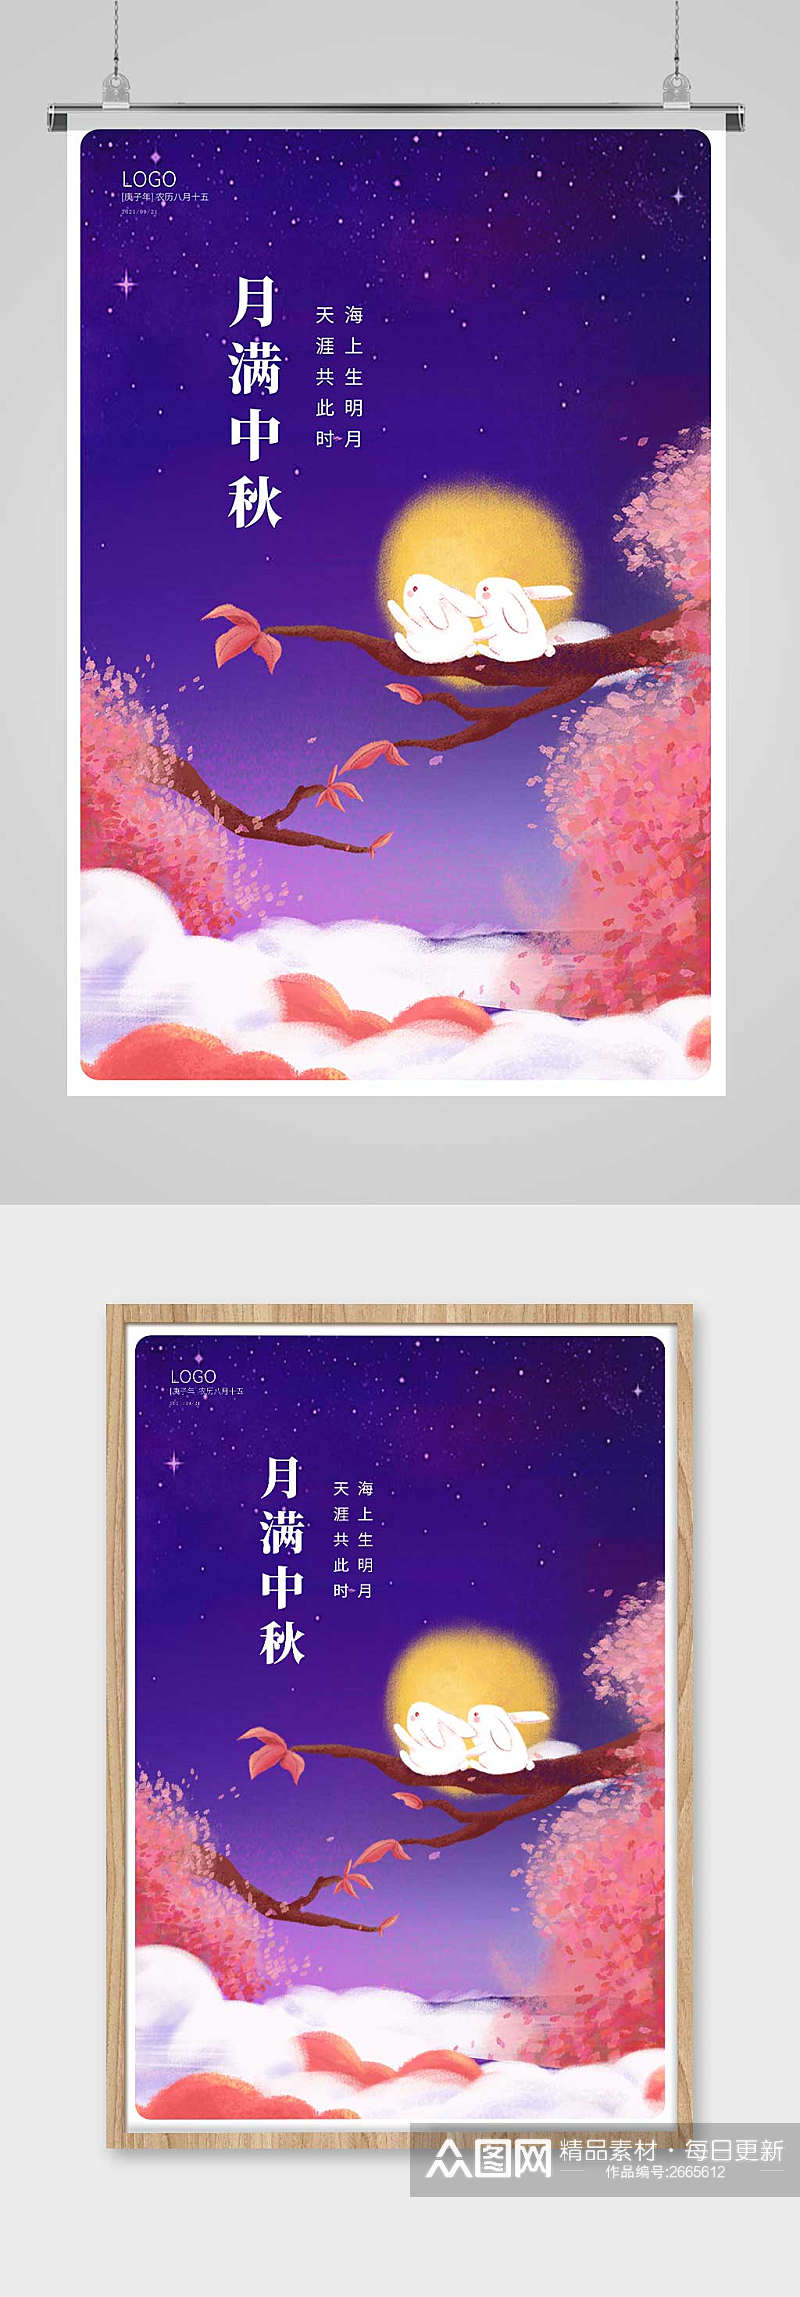 紫色唯美月满中秋中秋节宣传海报设计素材